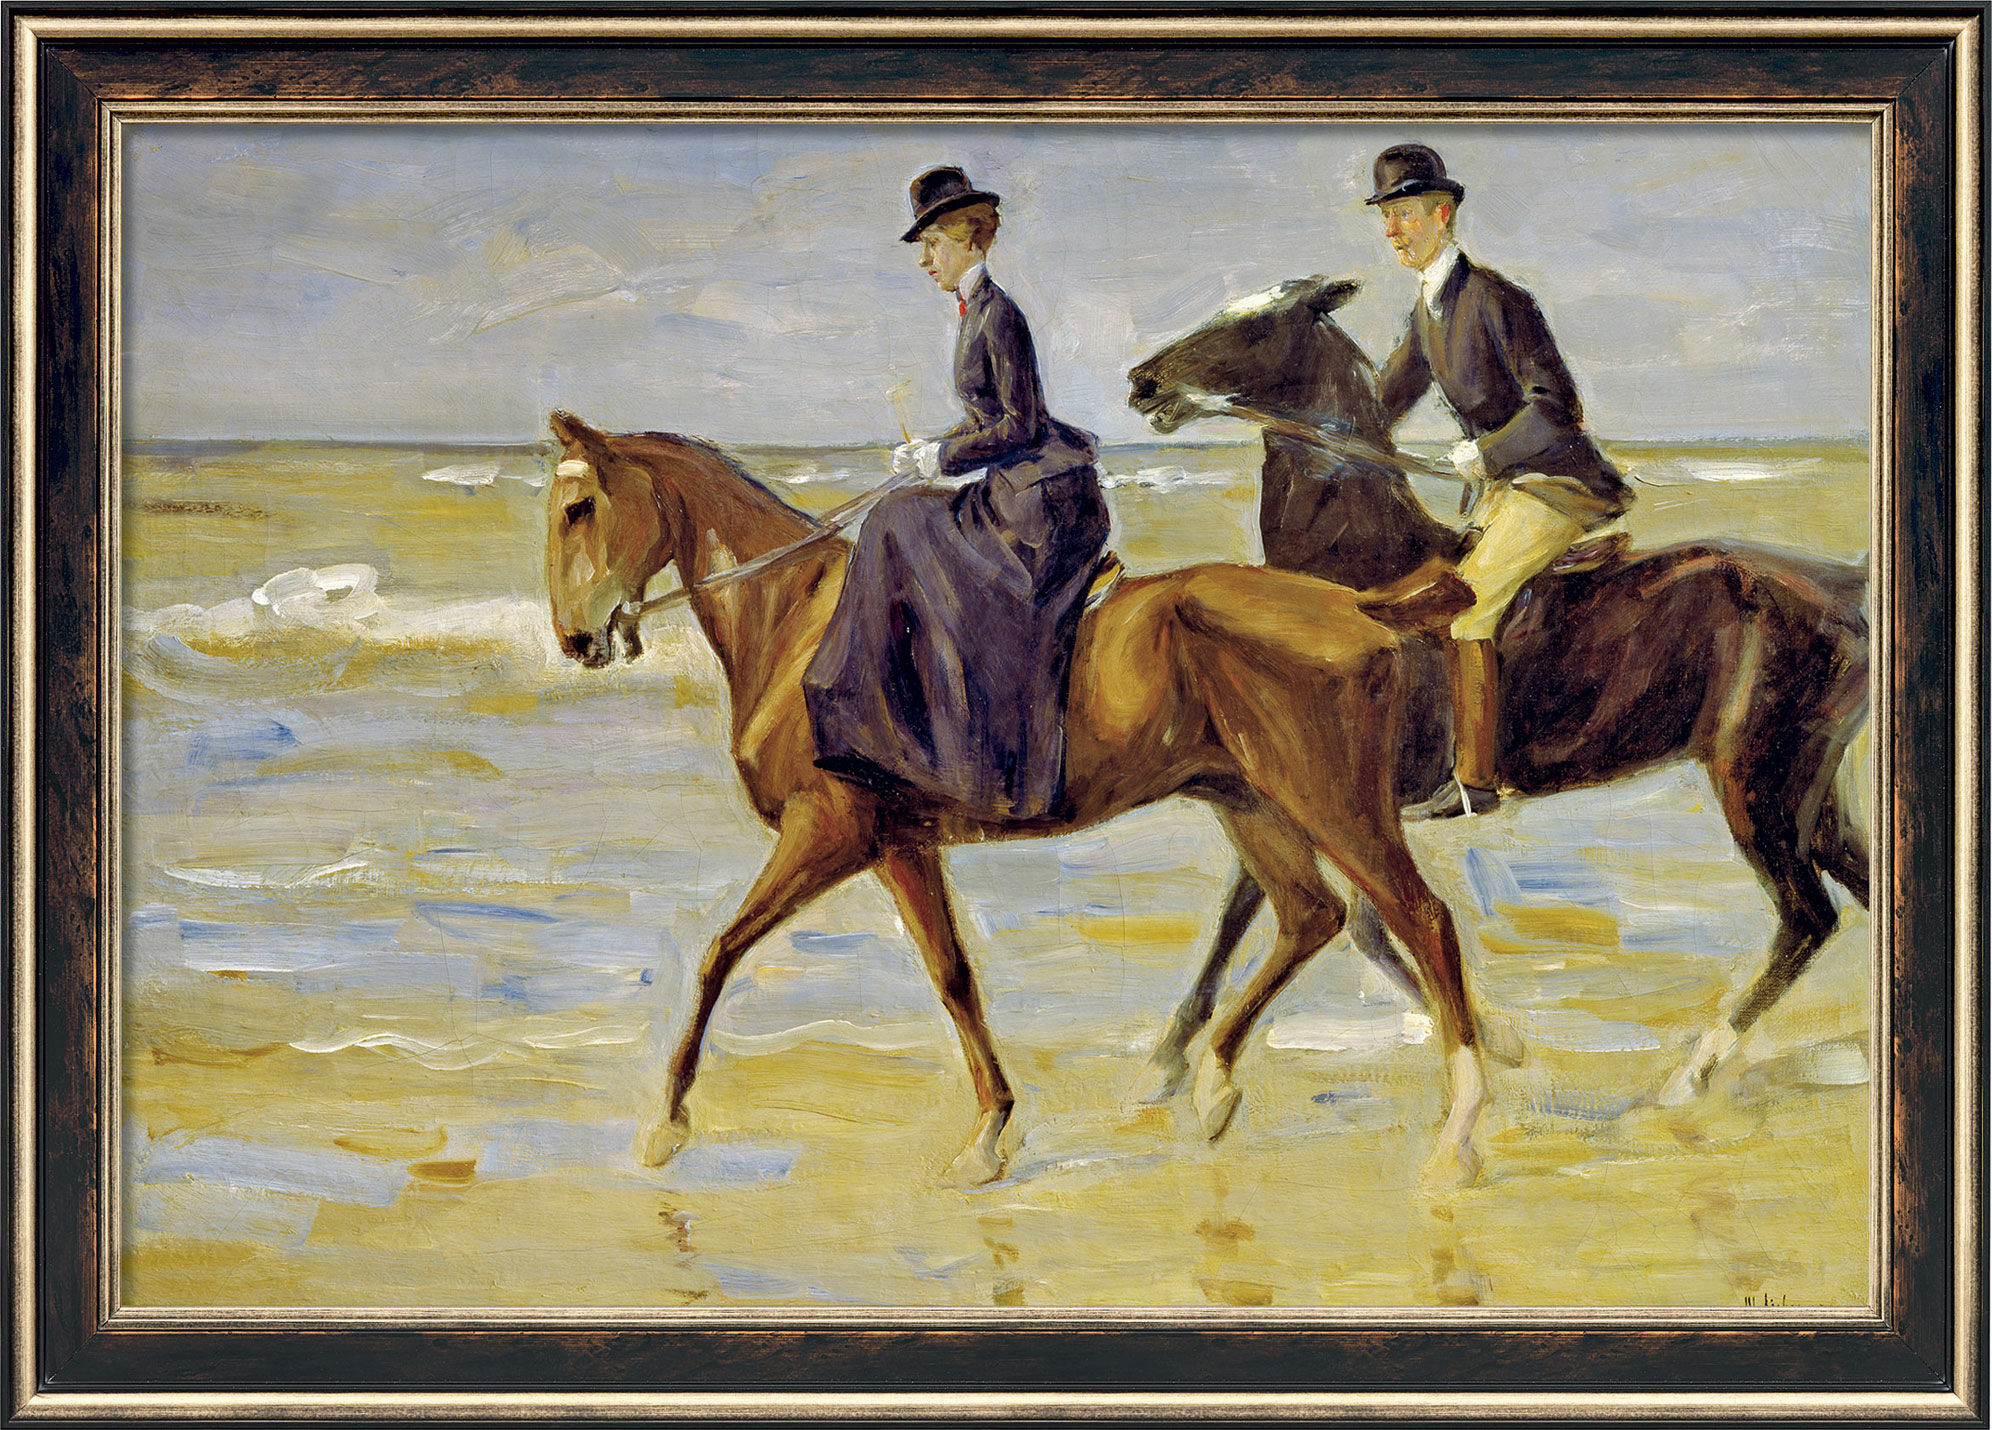 Bild "Reiter und Reiterin am Strand" (1903), gerahmt von Max Liebermann